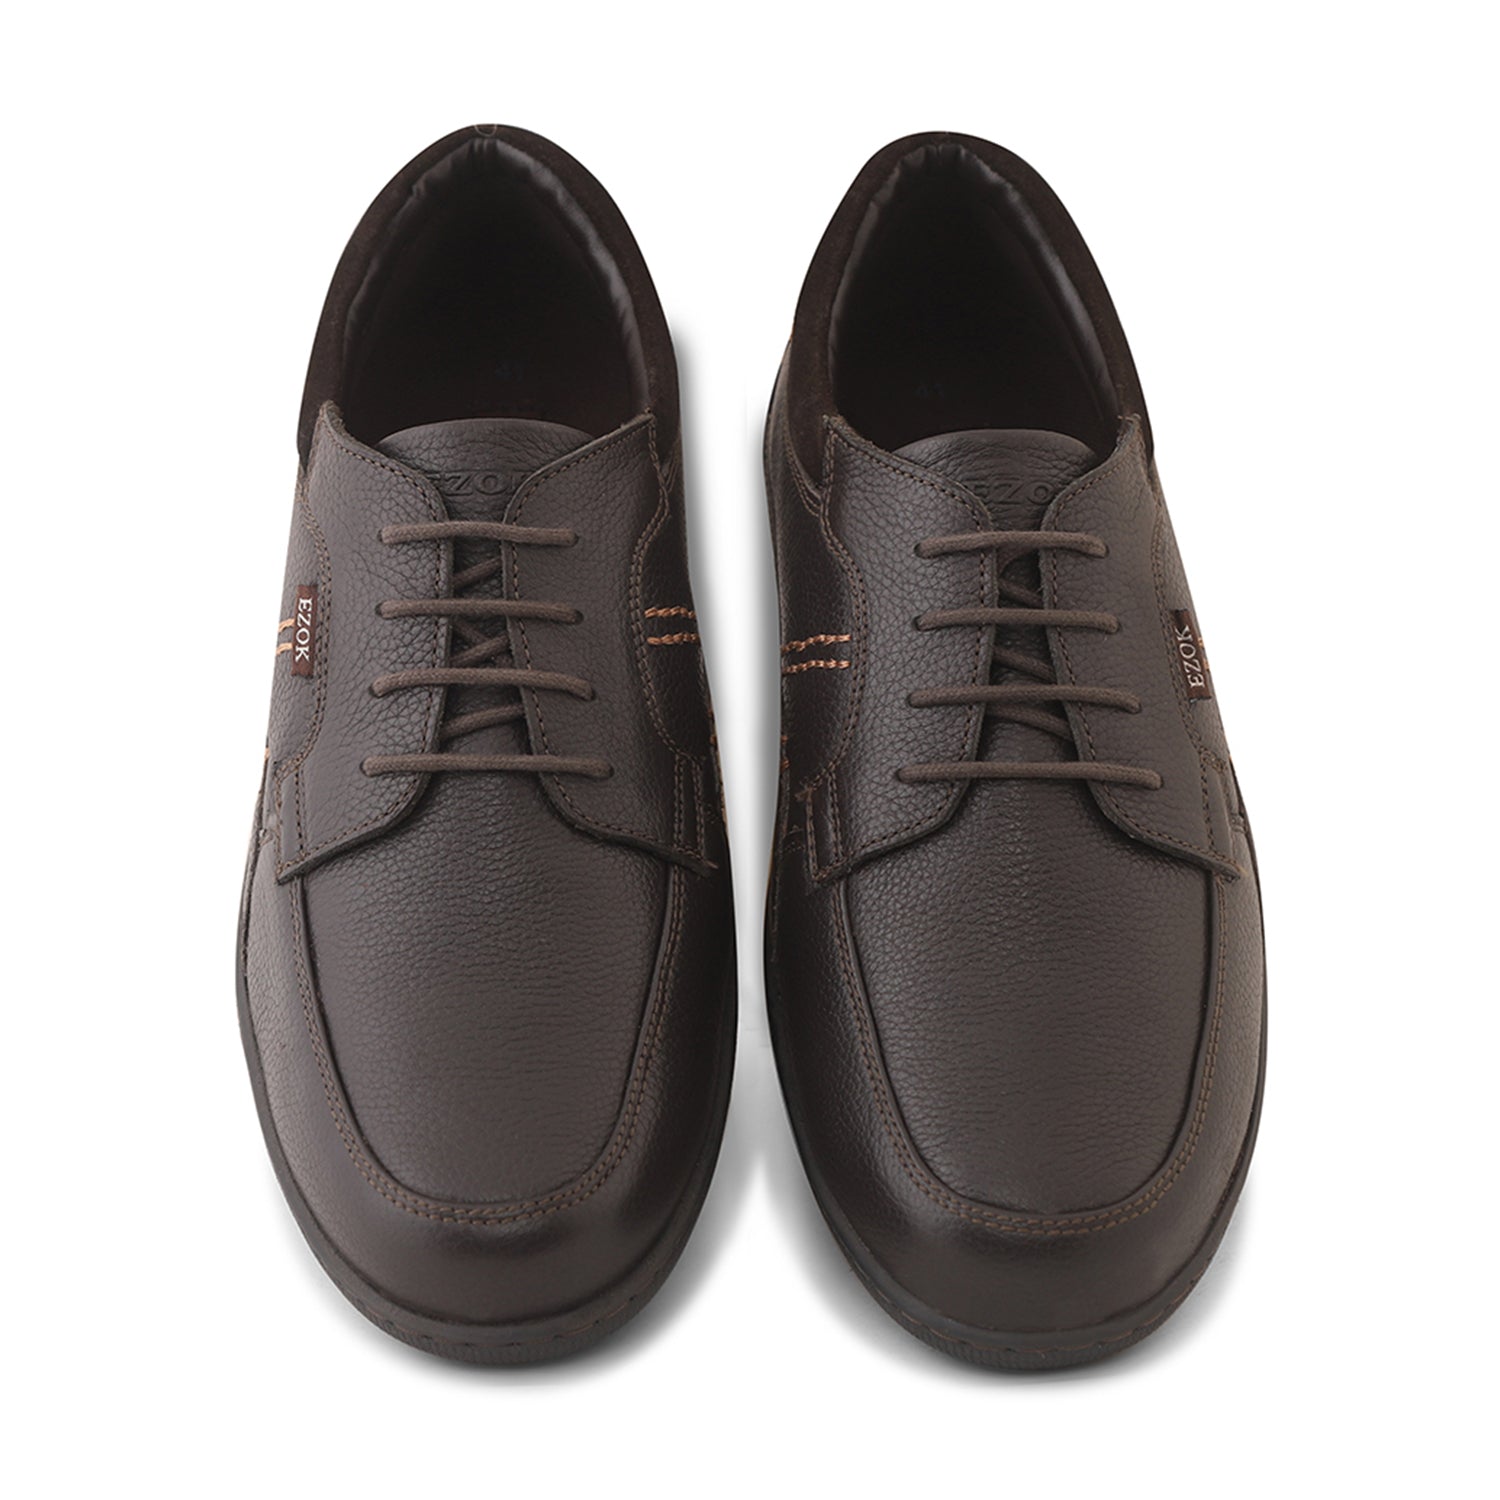 Ezok Men Brown Lace-Up Leather Shoes